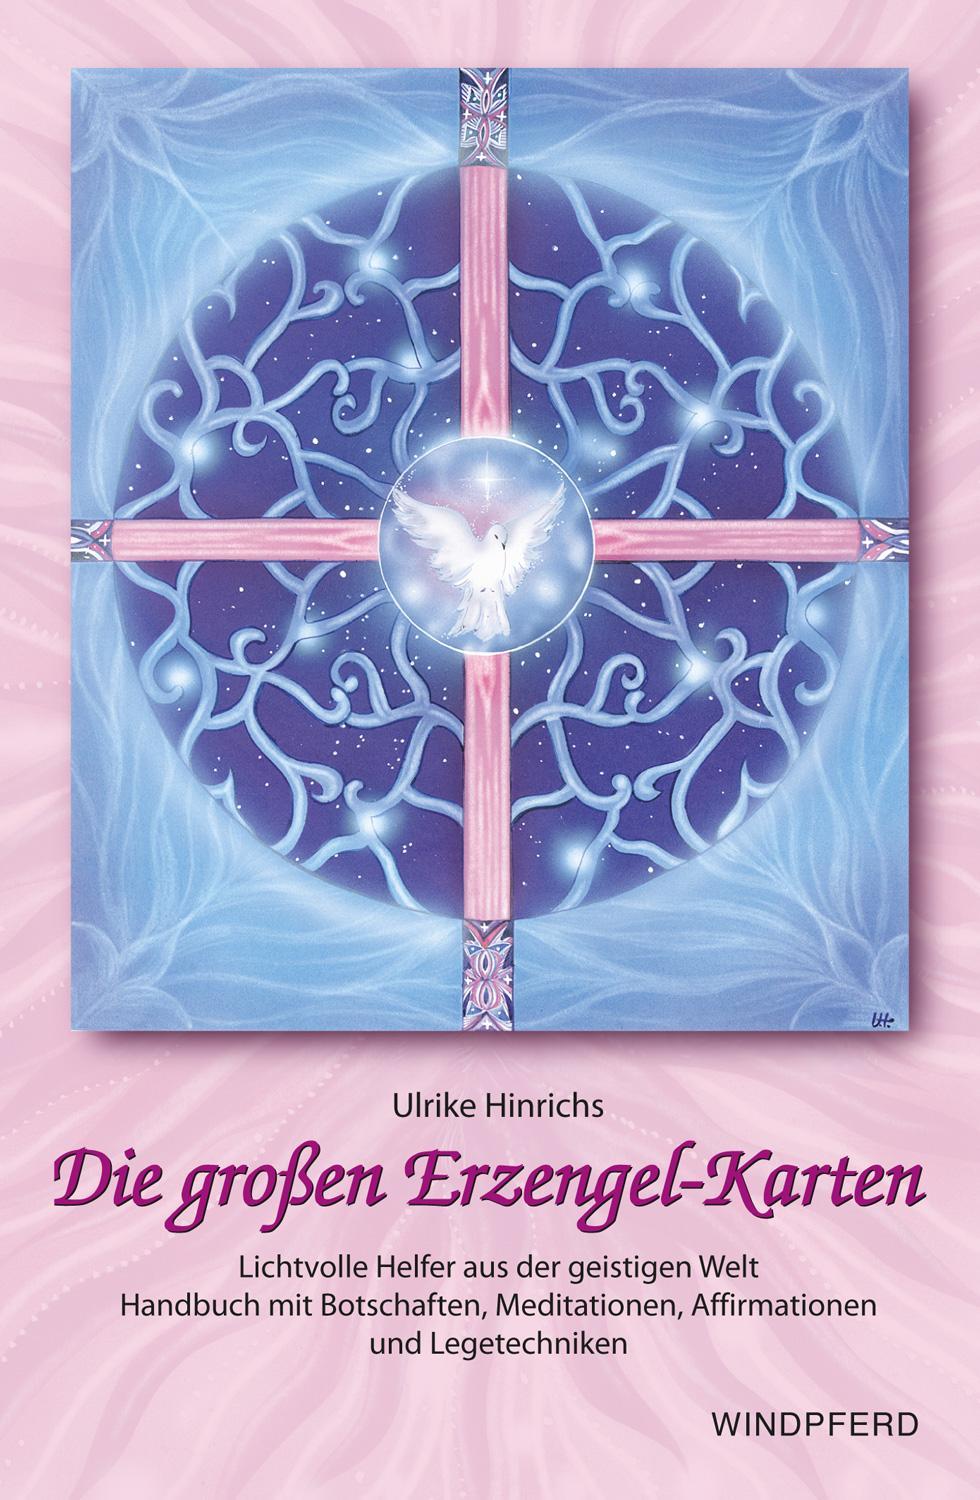 Die großen Erzengel-Karten. Set mit Handbuch und 18 Erzengelkarten Ulrike H ... - Picture 1 of 1